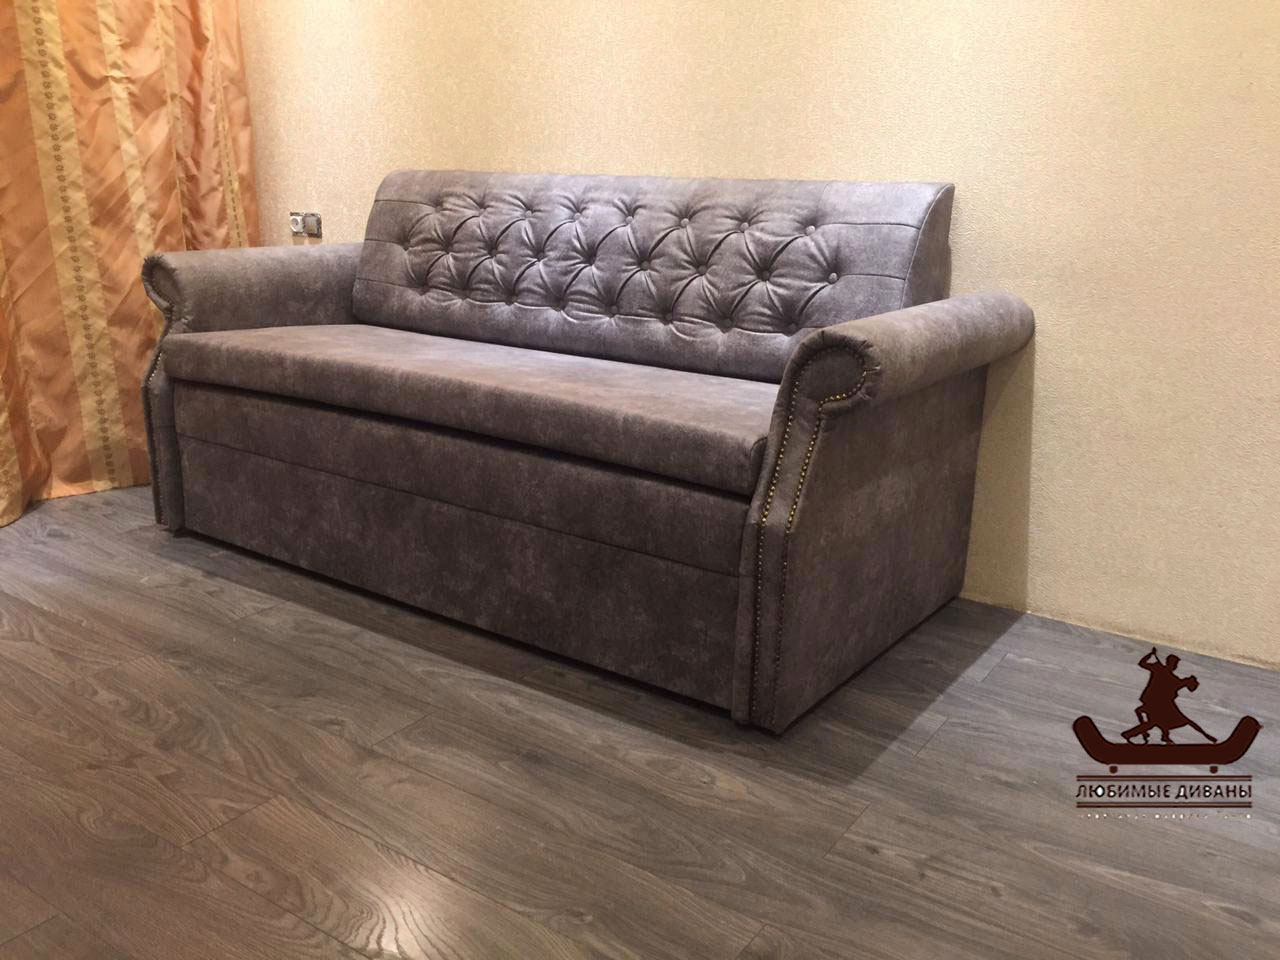 Компактный диван Танго-3 для малогабаритной квартиры